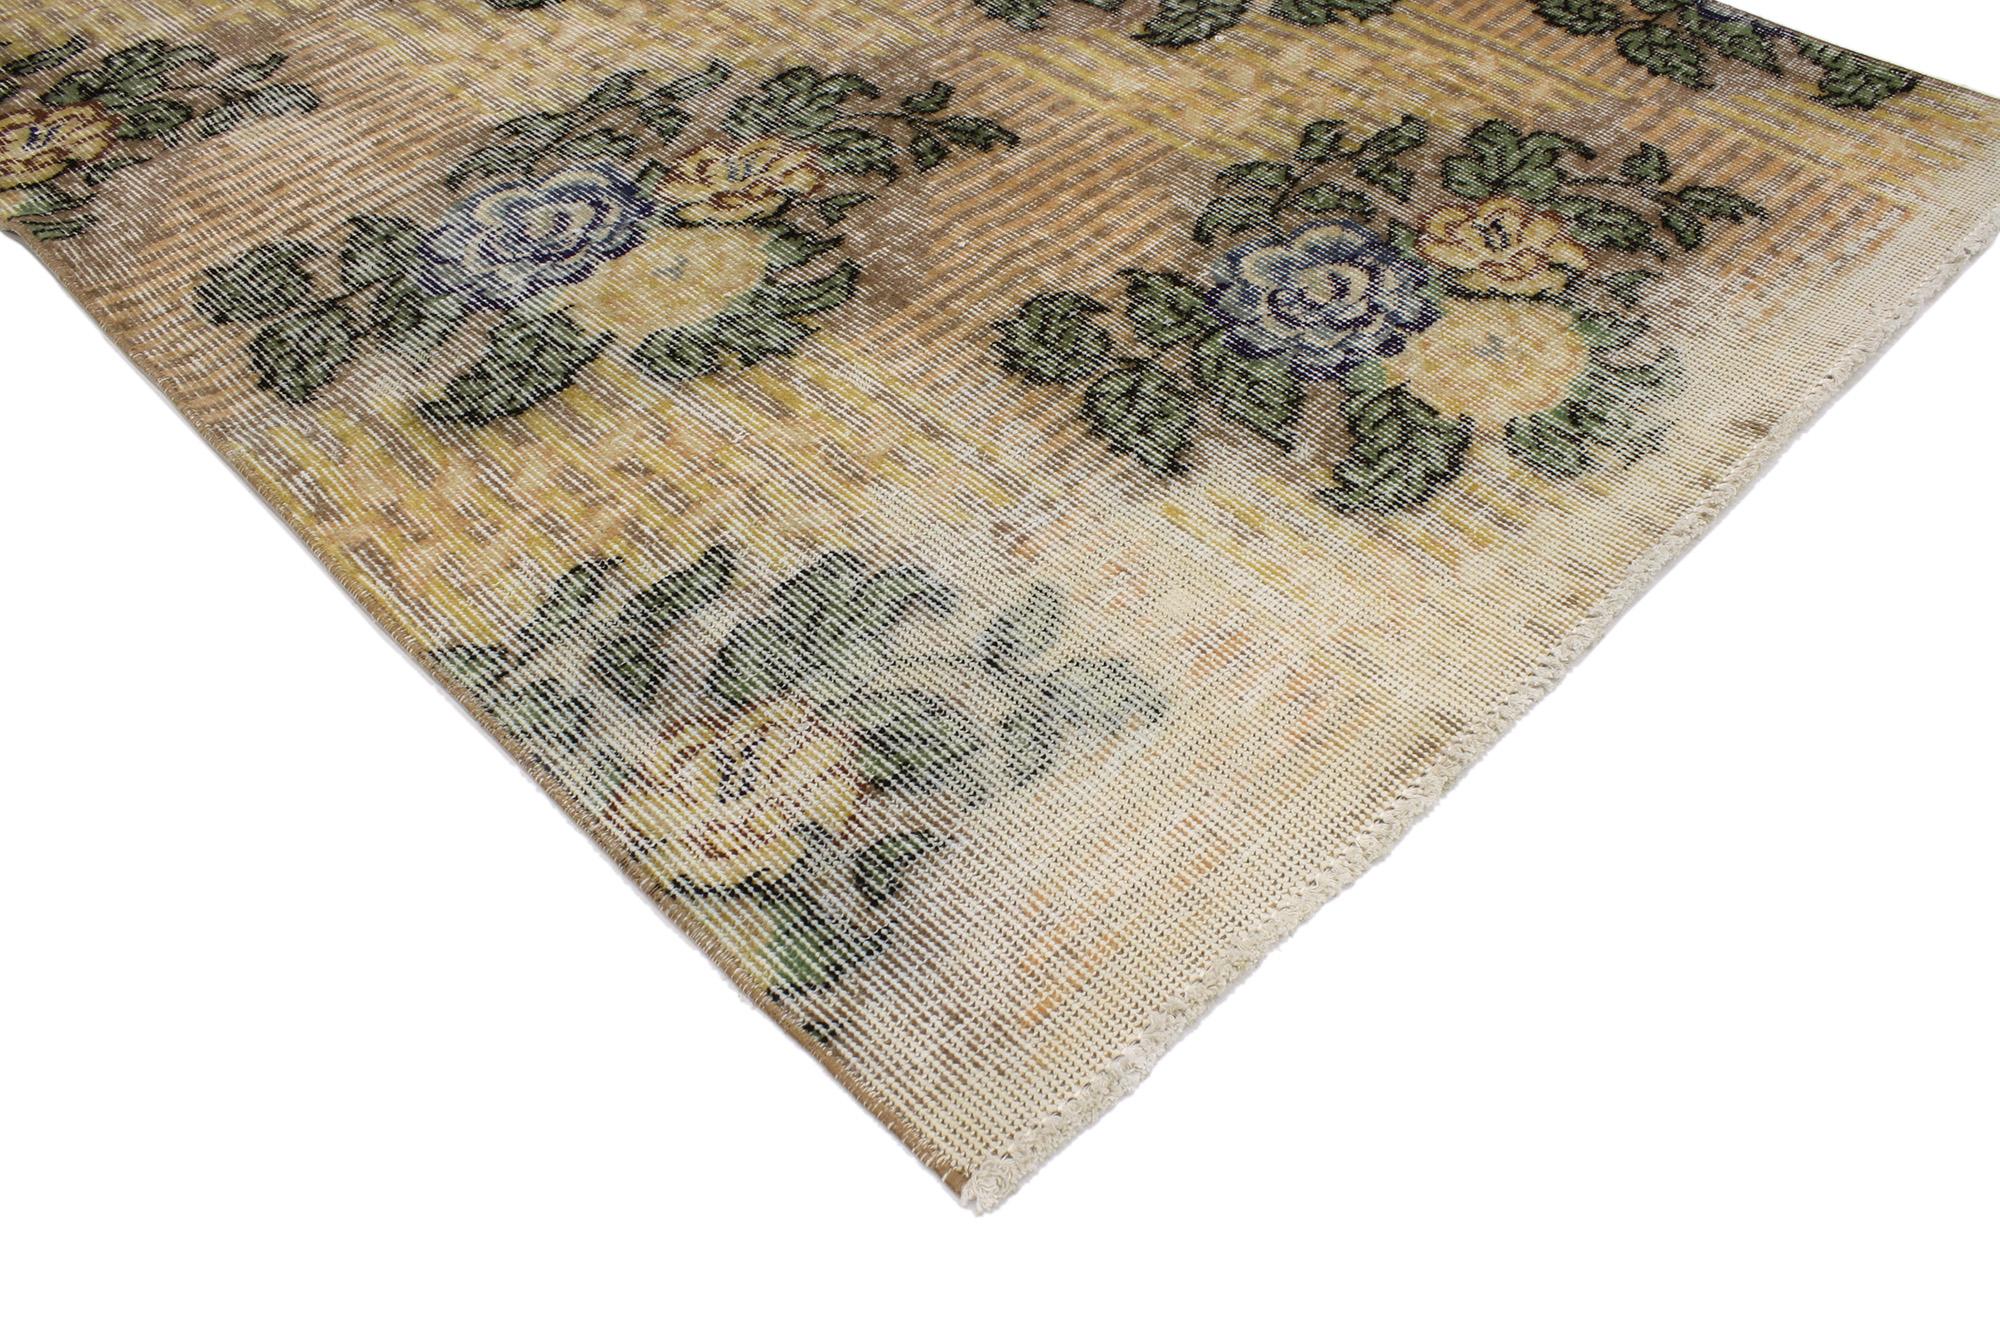 51925 Türkischer Sivas-Teppich im Vintage-Stil, 03'07 x 06'04. Zu Ehren des berühmten türkischen Sängers Zeki Müren benannt, stammen die türkischen Sivas-Teppiche von Zeki Muren aus der Region Sivas in der Türkei. Diese Teppiche werden für ihre